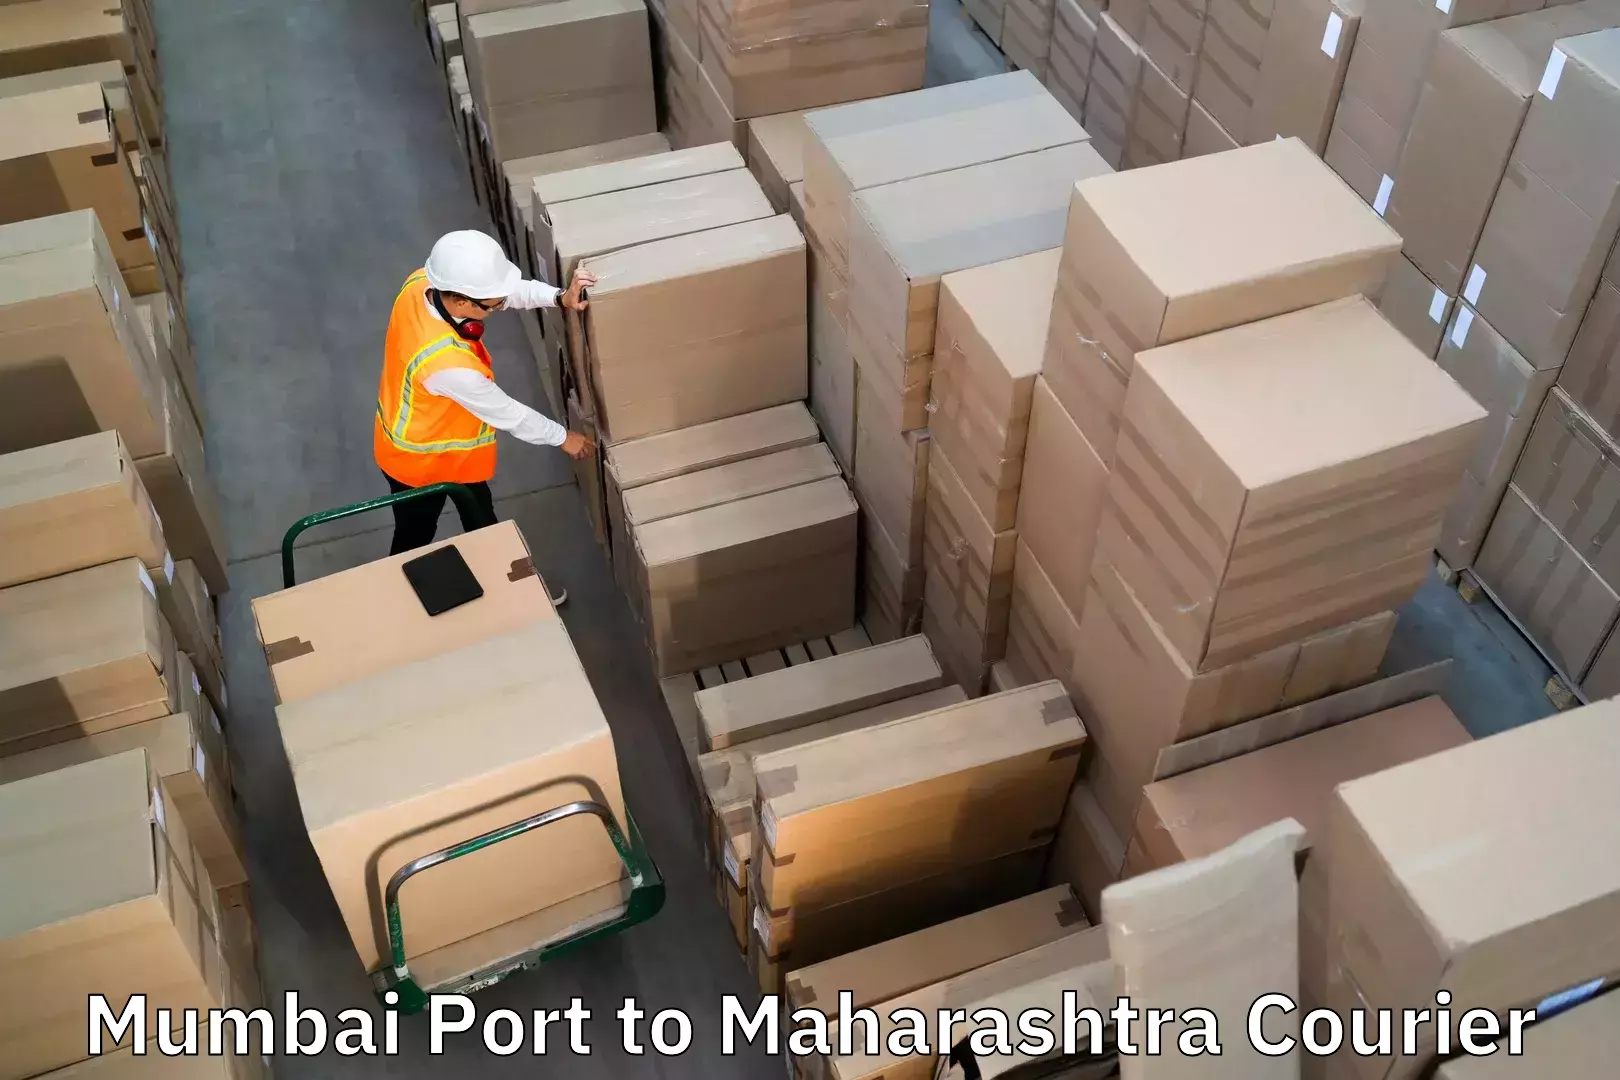 Luggage transport service Mumbai Port to Maharashtra